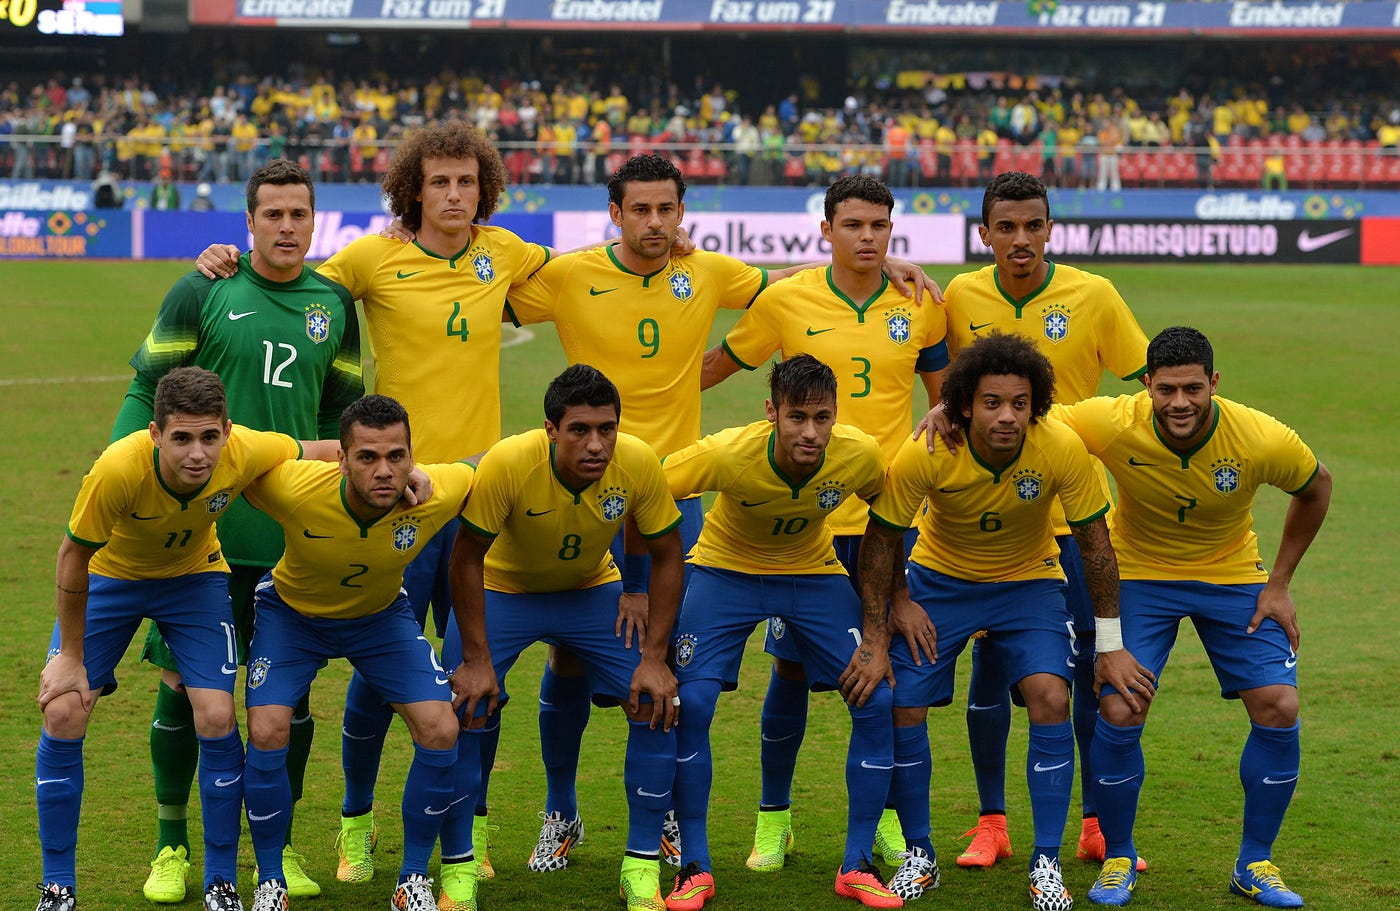 Brazil national football team trailer,World cup 2018 Brazil team trailer, B...